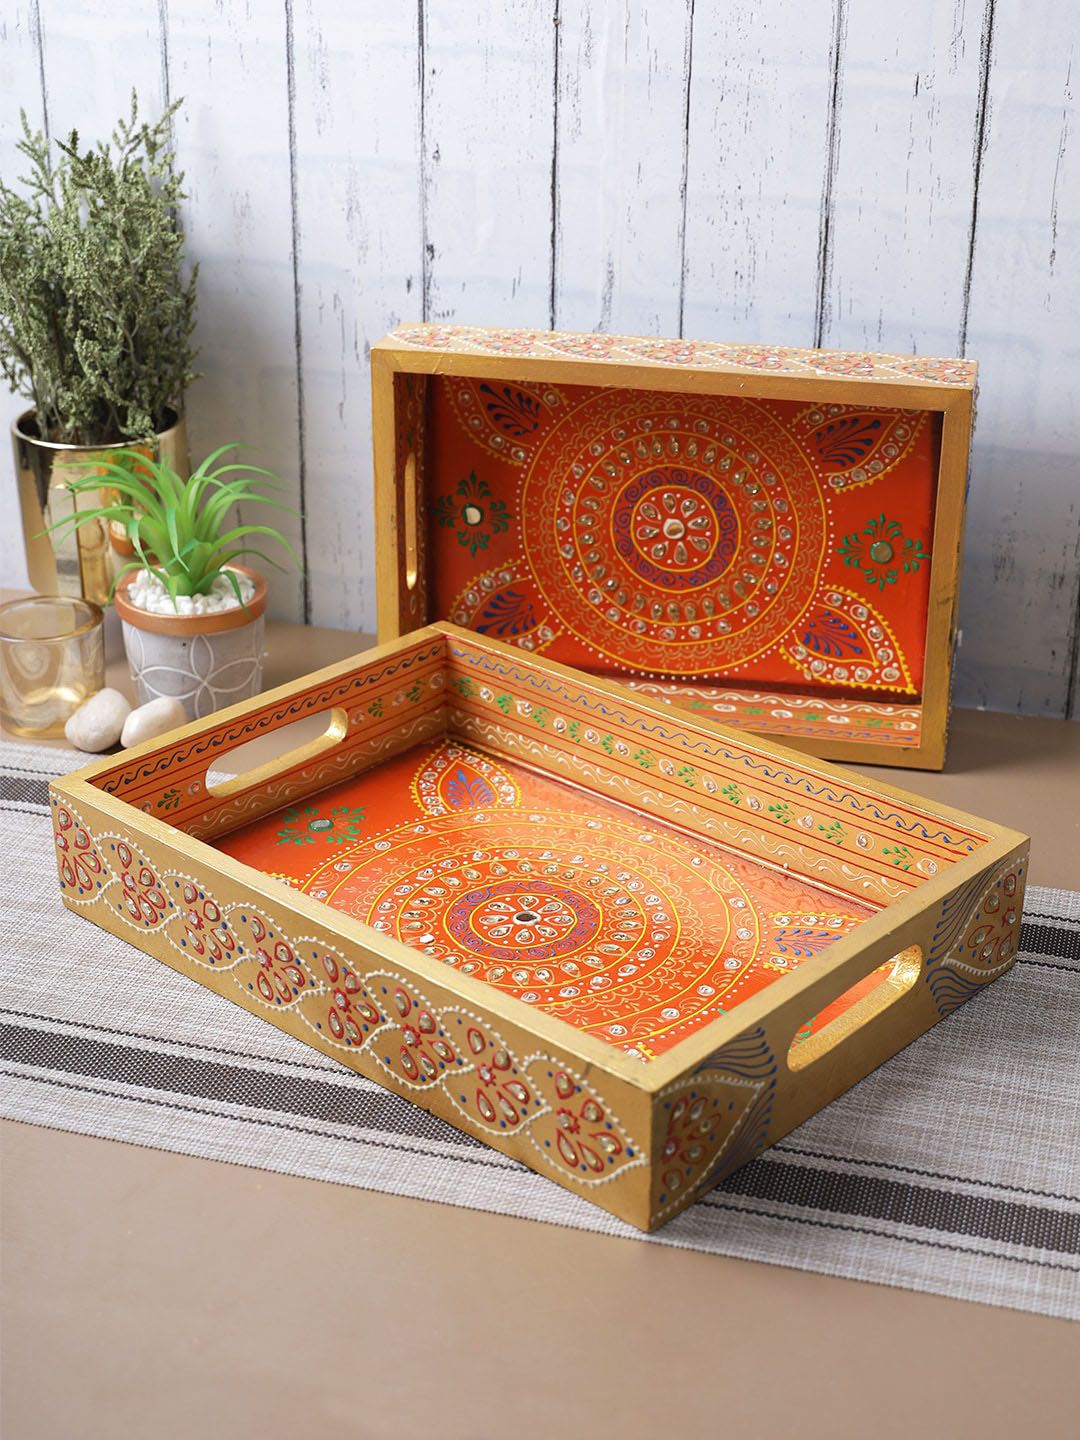 Aapno Rajasthan Set of 2 Orange & Brown Printed Wooden Serving Trays Price in India